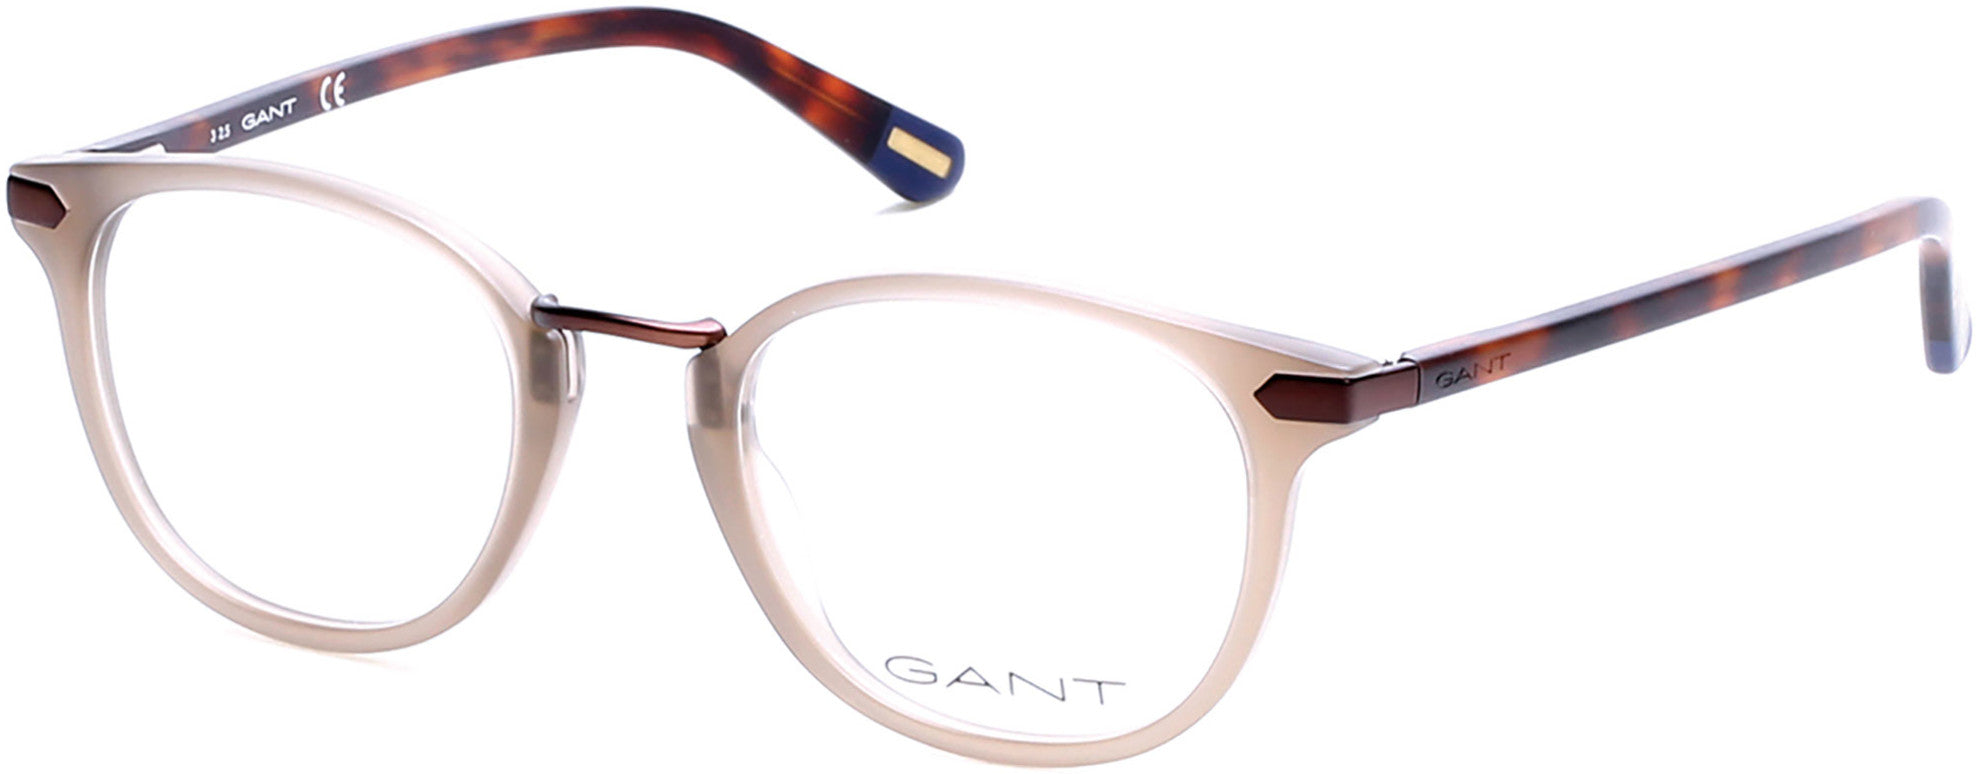 Gant GA3115 Round Eyeglasses 020-020 - Grey